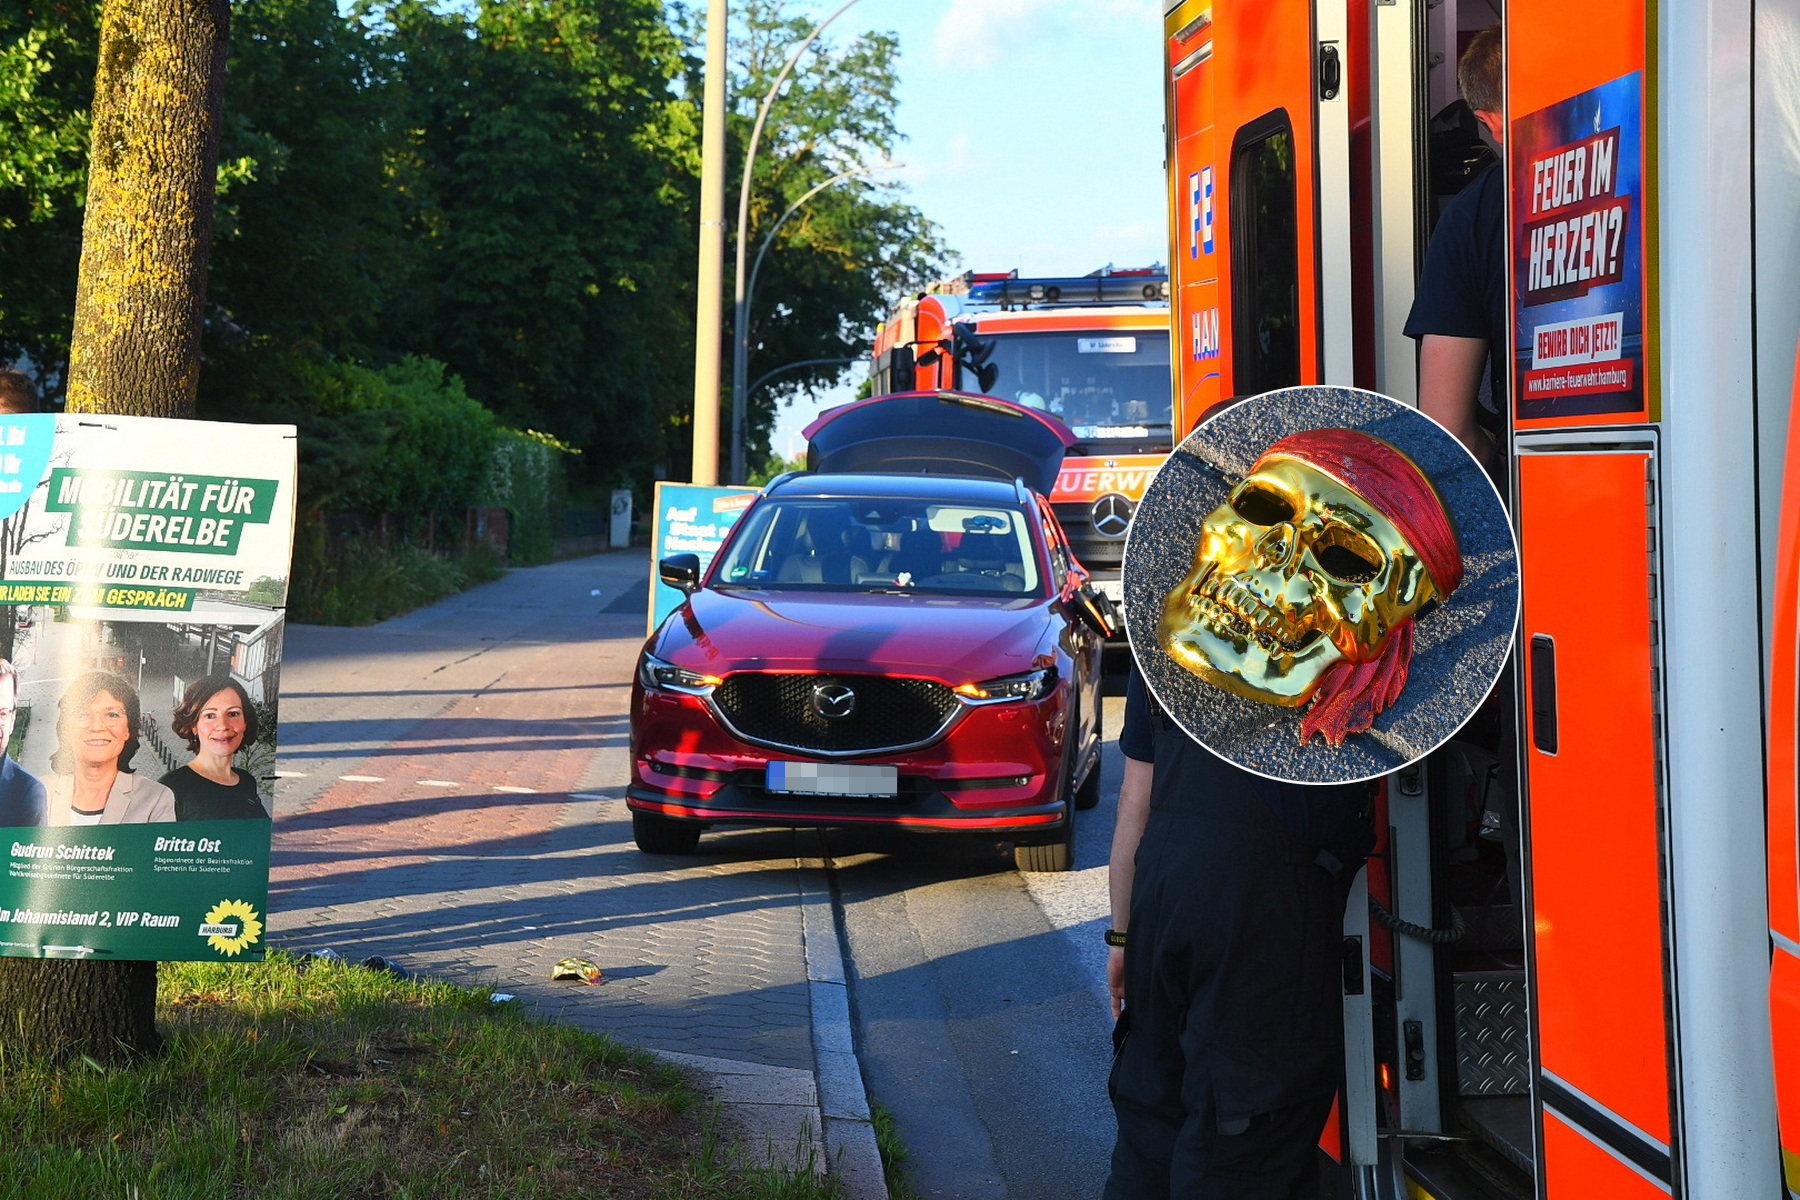 Diese goldene Totenkopfmaske trug der Mann, als er plötzlich über die Cuxhavener Straße lief. Der Mazda-Fahrer konnte nicht mehr ausweichen und erfasste den Betrunkenen.